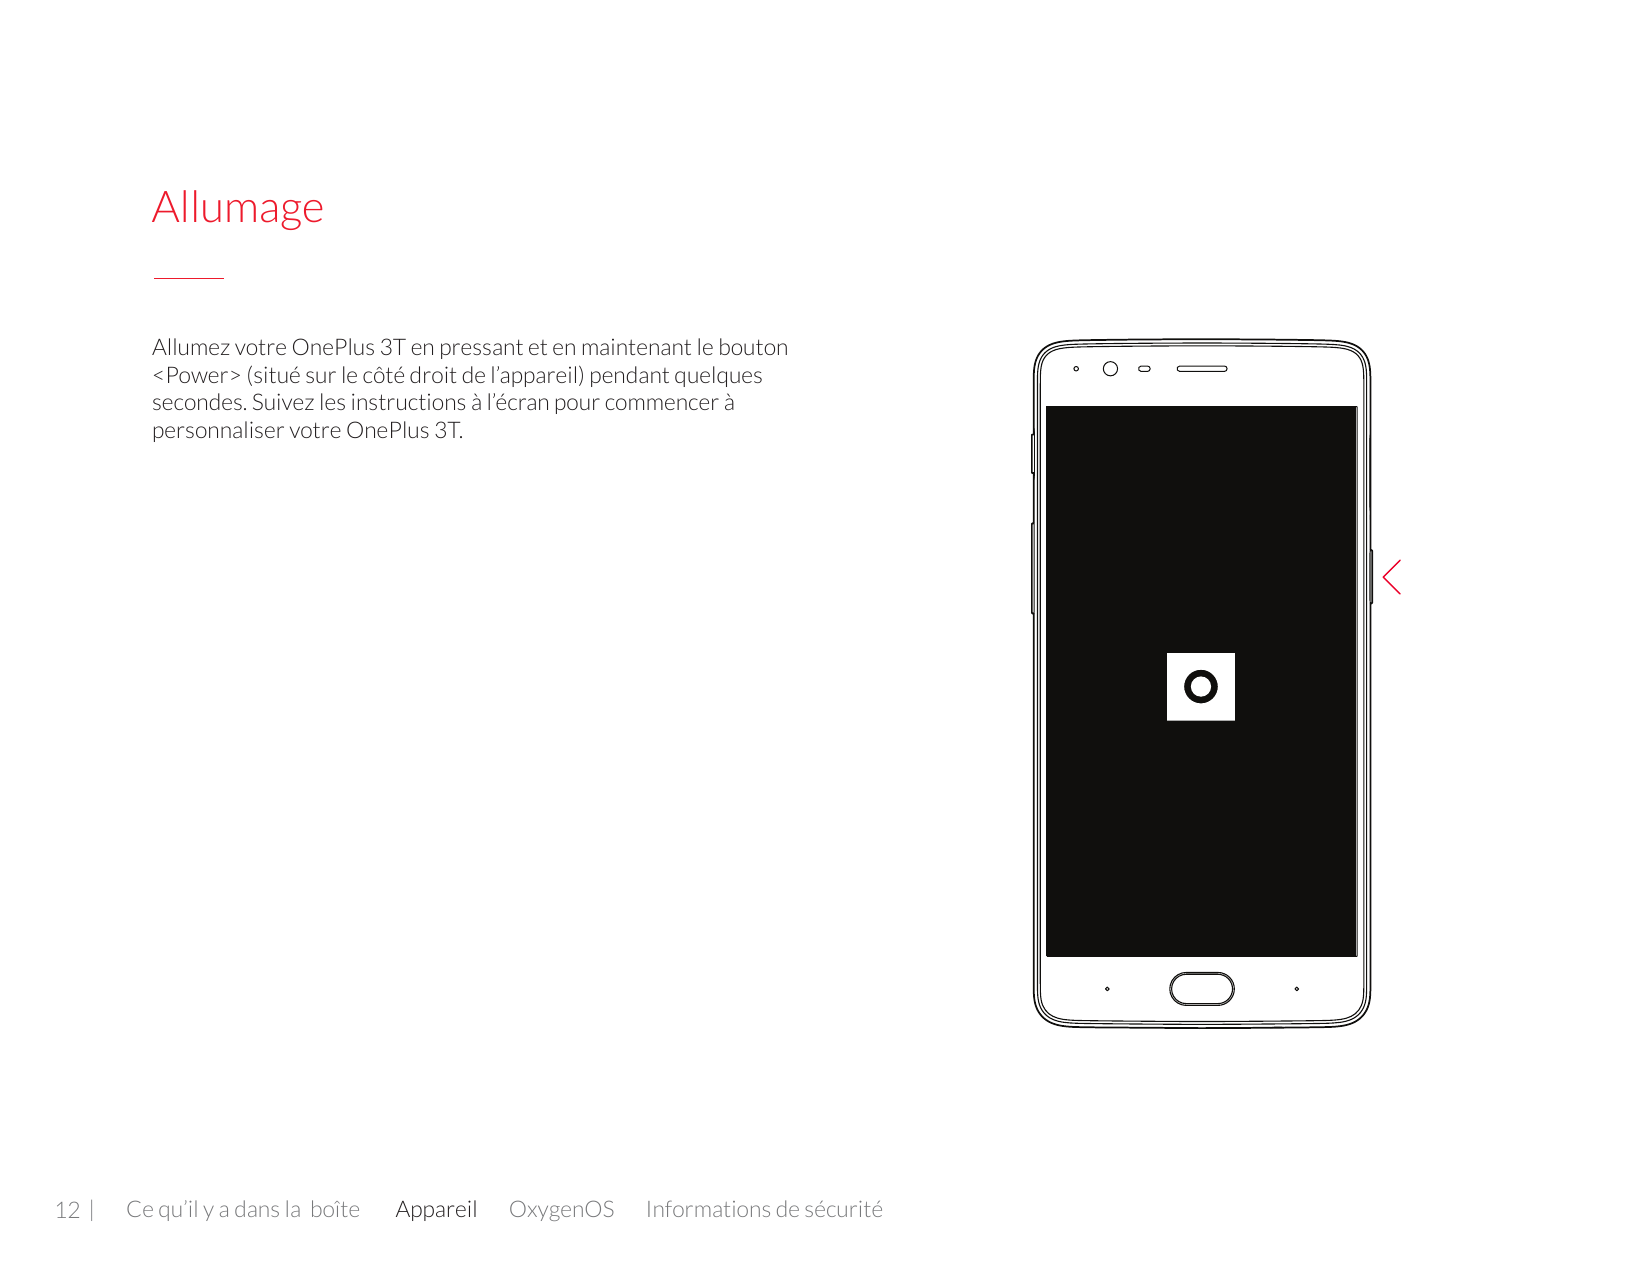 AllumageAllumez votre OnePlus 3T en pressant et en maintenant le bouton<Power> (situé sur le côté droit de l’appareil) pendant q